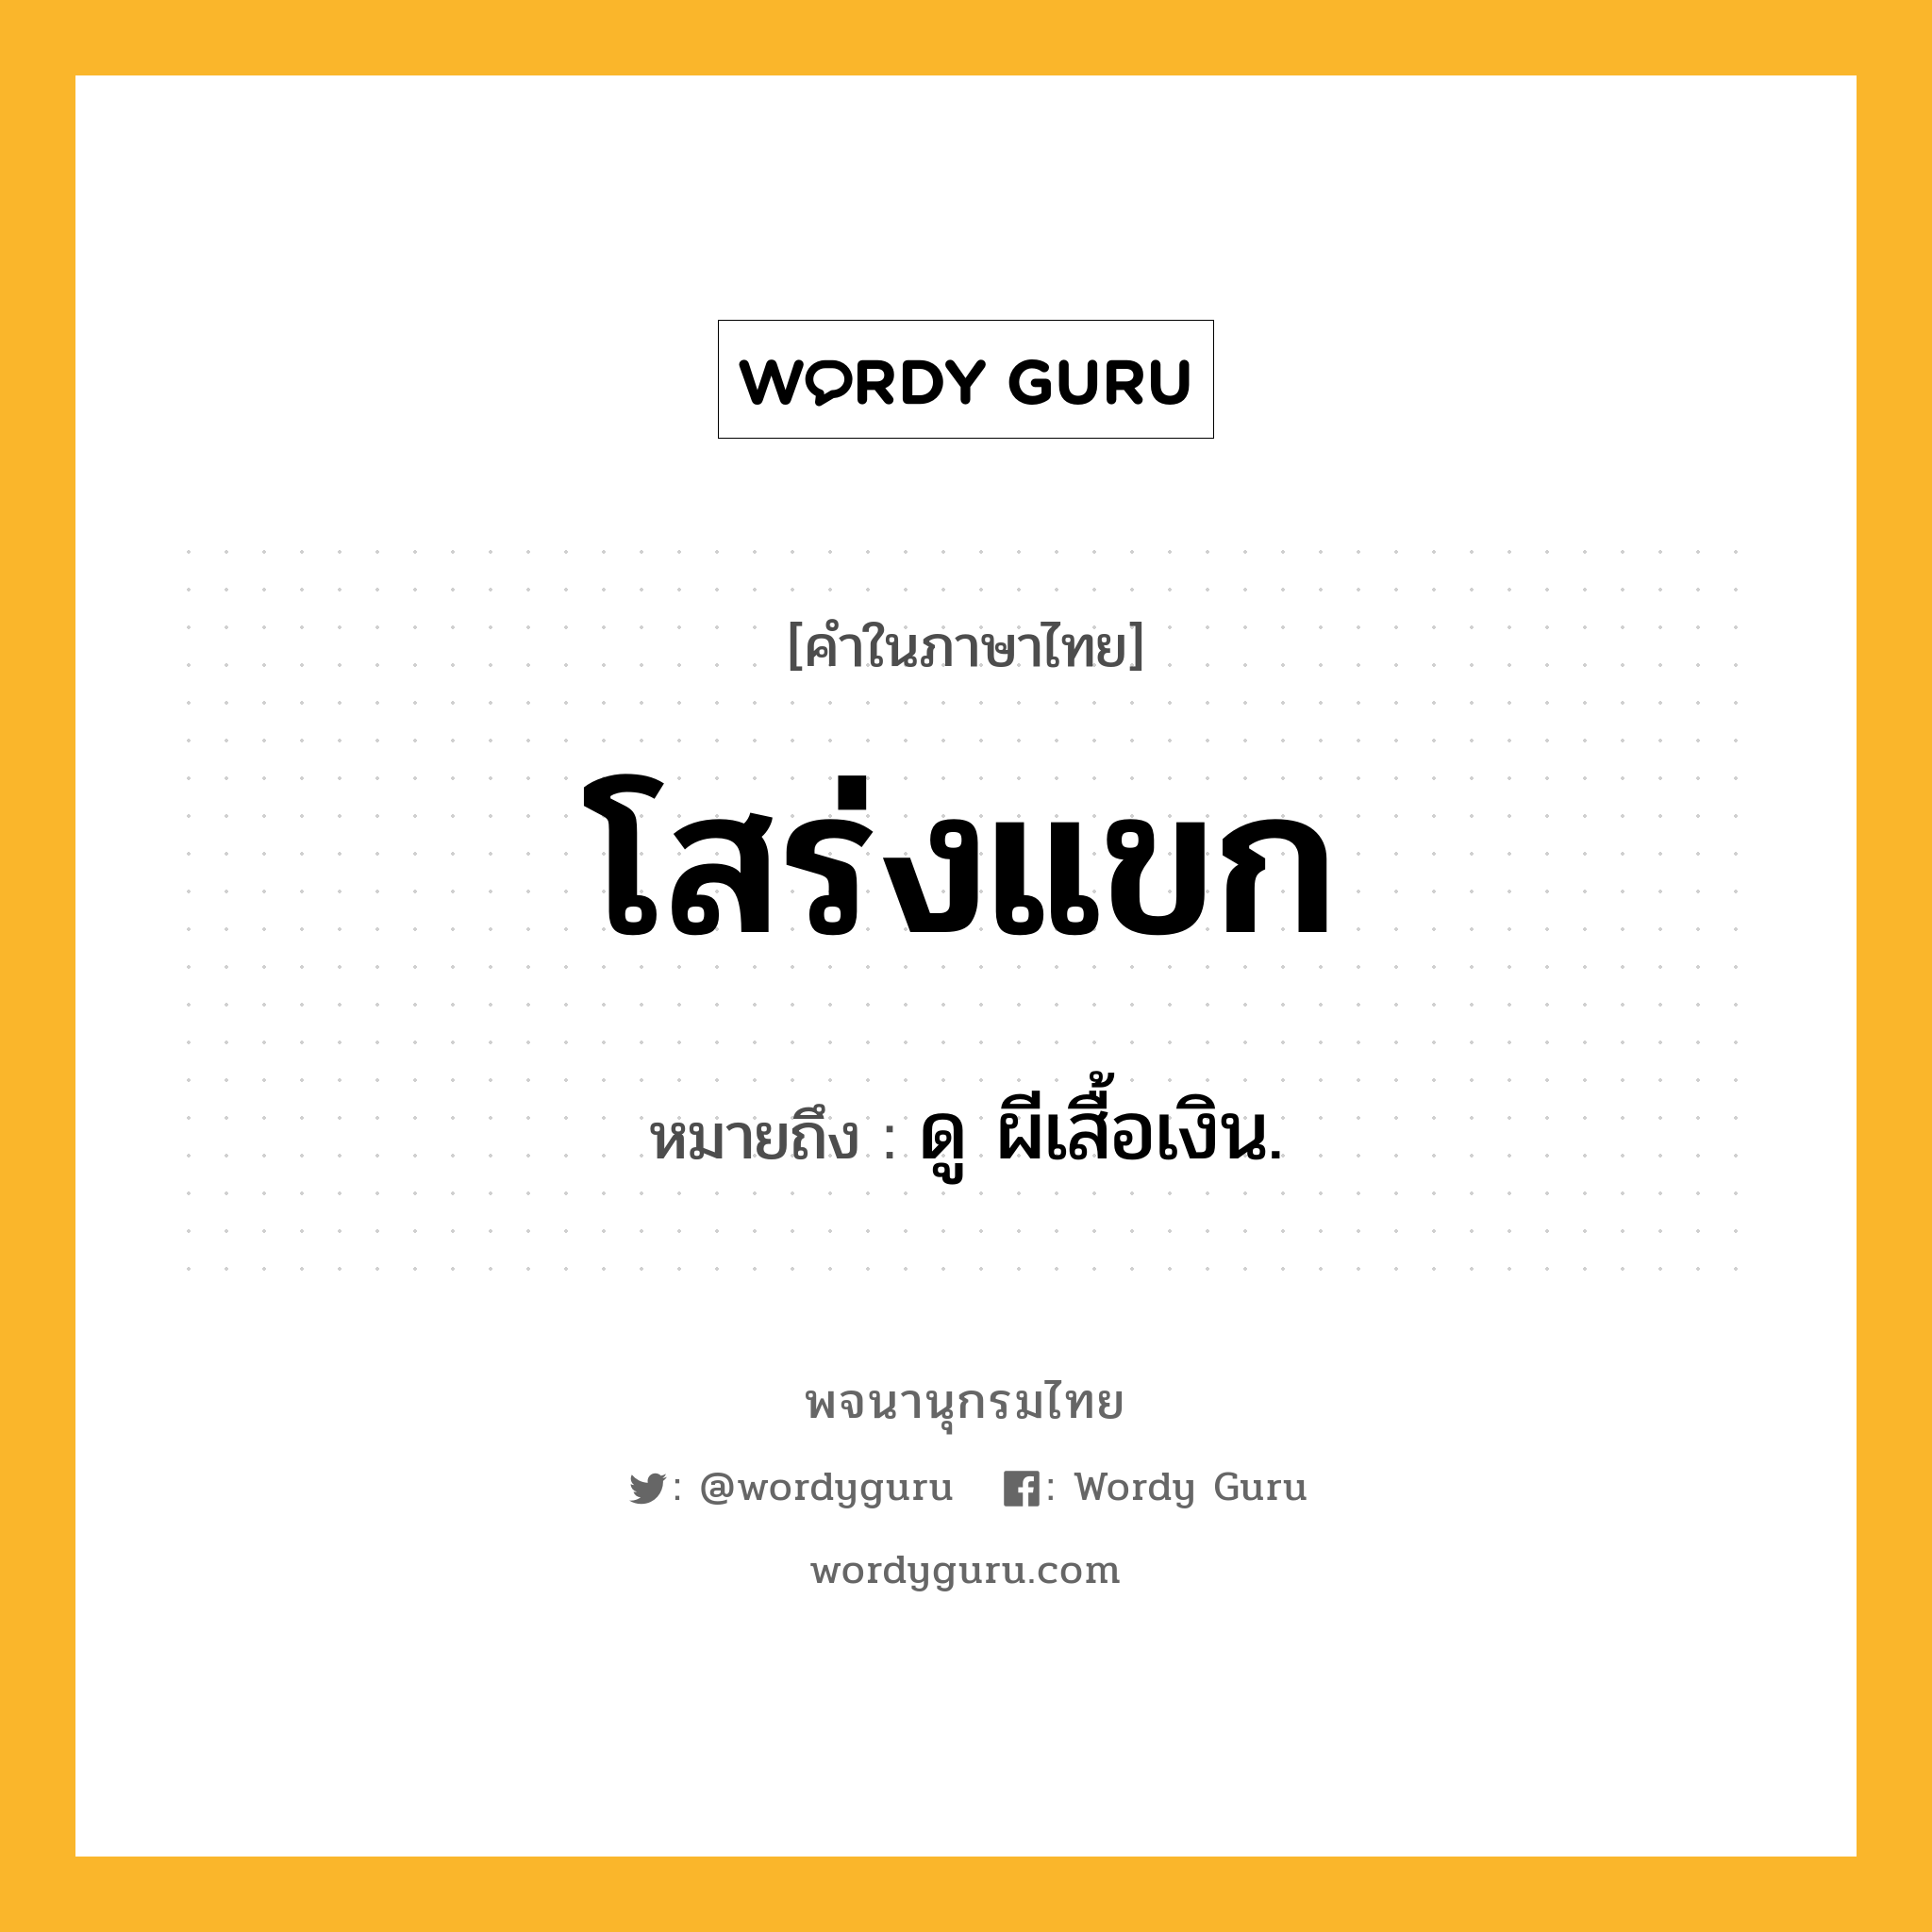 โสร่งแขก ความหมาย หมายถึงอะไร?, คำในภาษาไทย โสร่งแขก หมายถึง ดู ผีเสื้อเงิน.